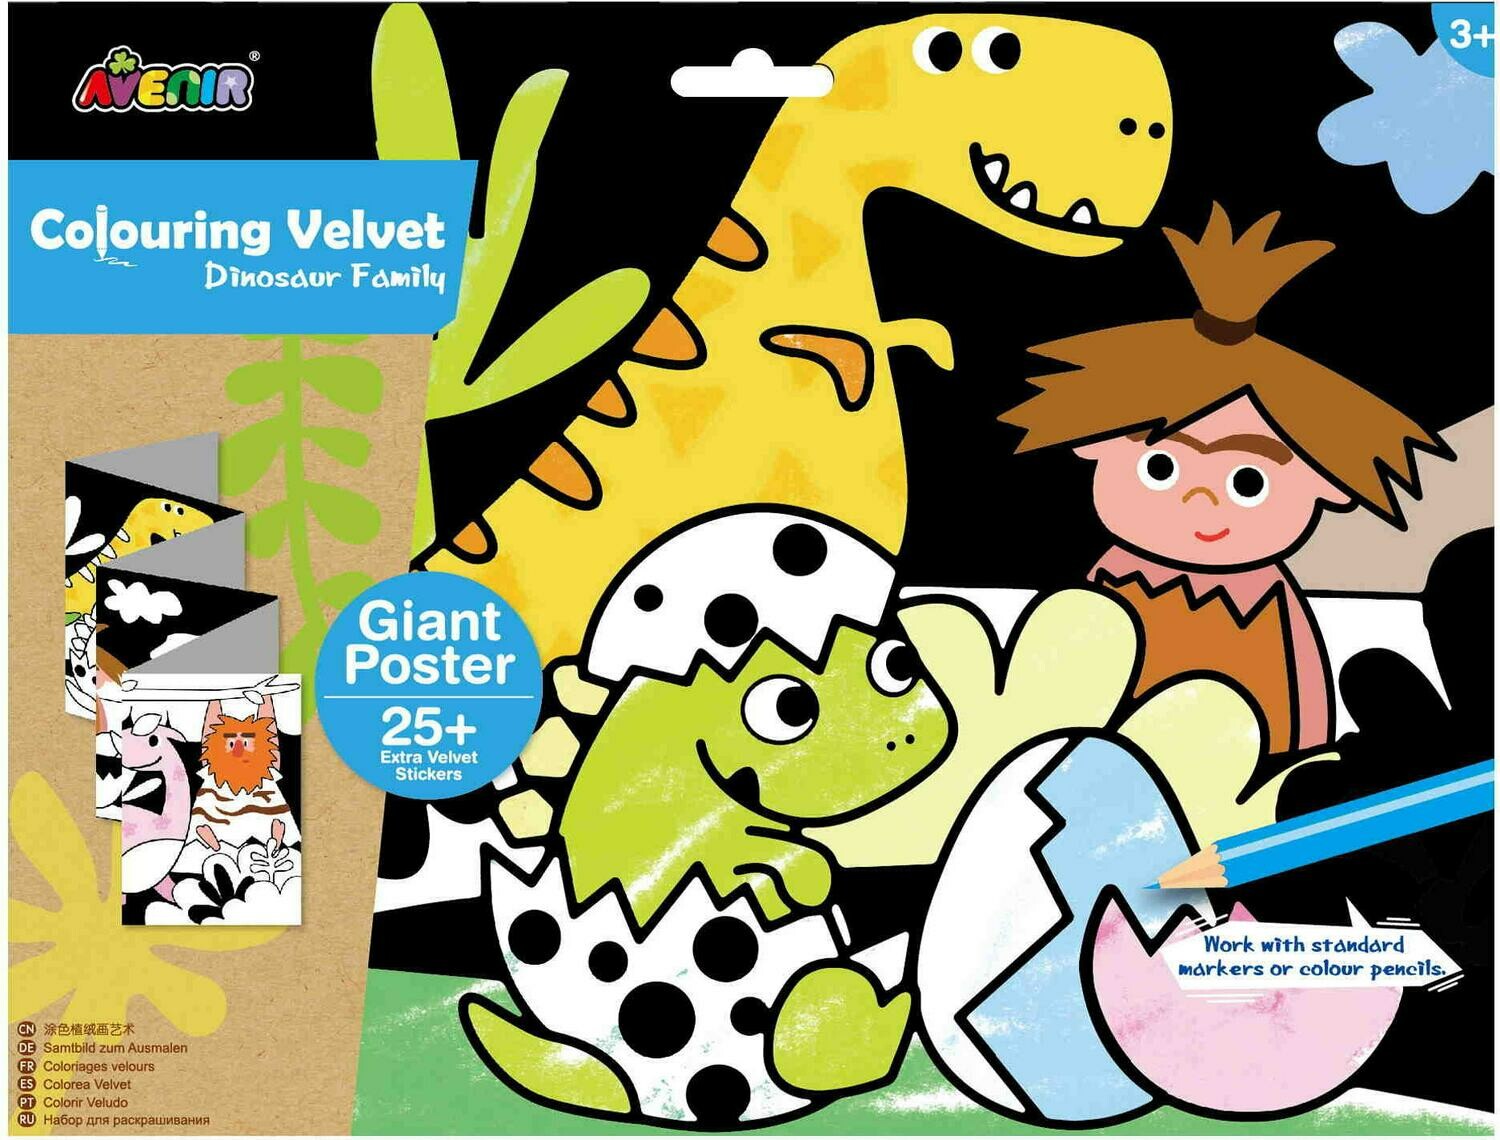 Giant Velvet Poster - Dinosaur